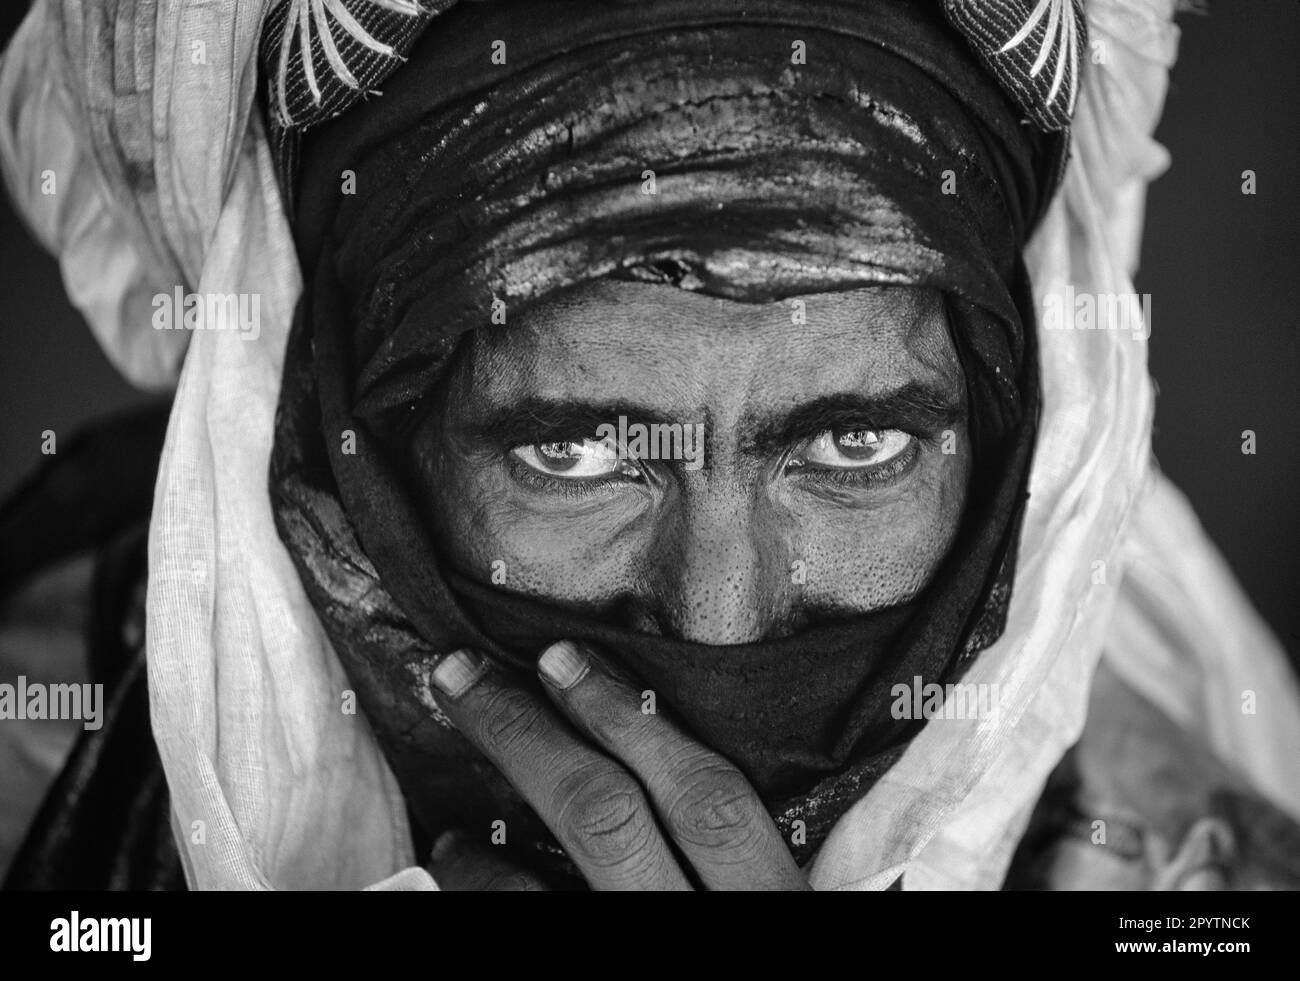 Mali. Menaka, près de Gao. Désert du Sahara. Sahel. Homme de la tribu Tuareg. Portrait. Noir et blanc. Banque D'Images